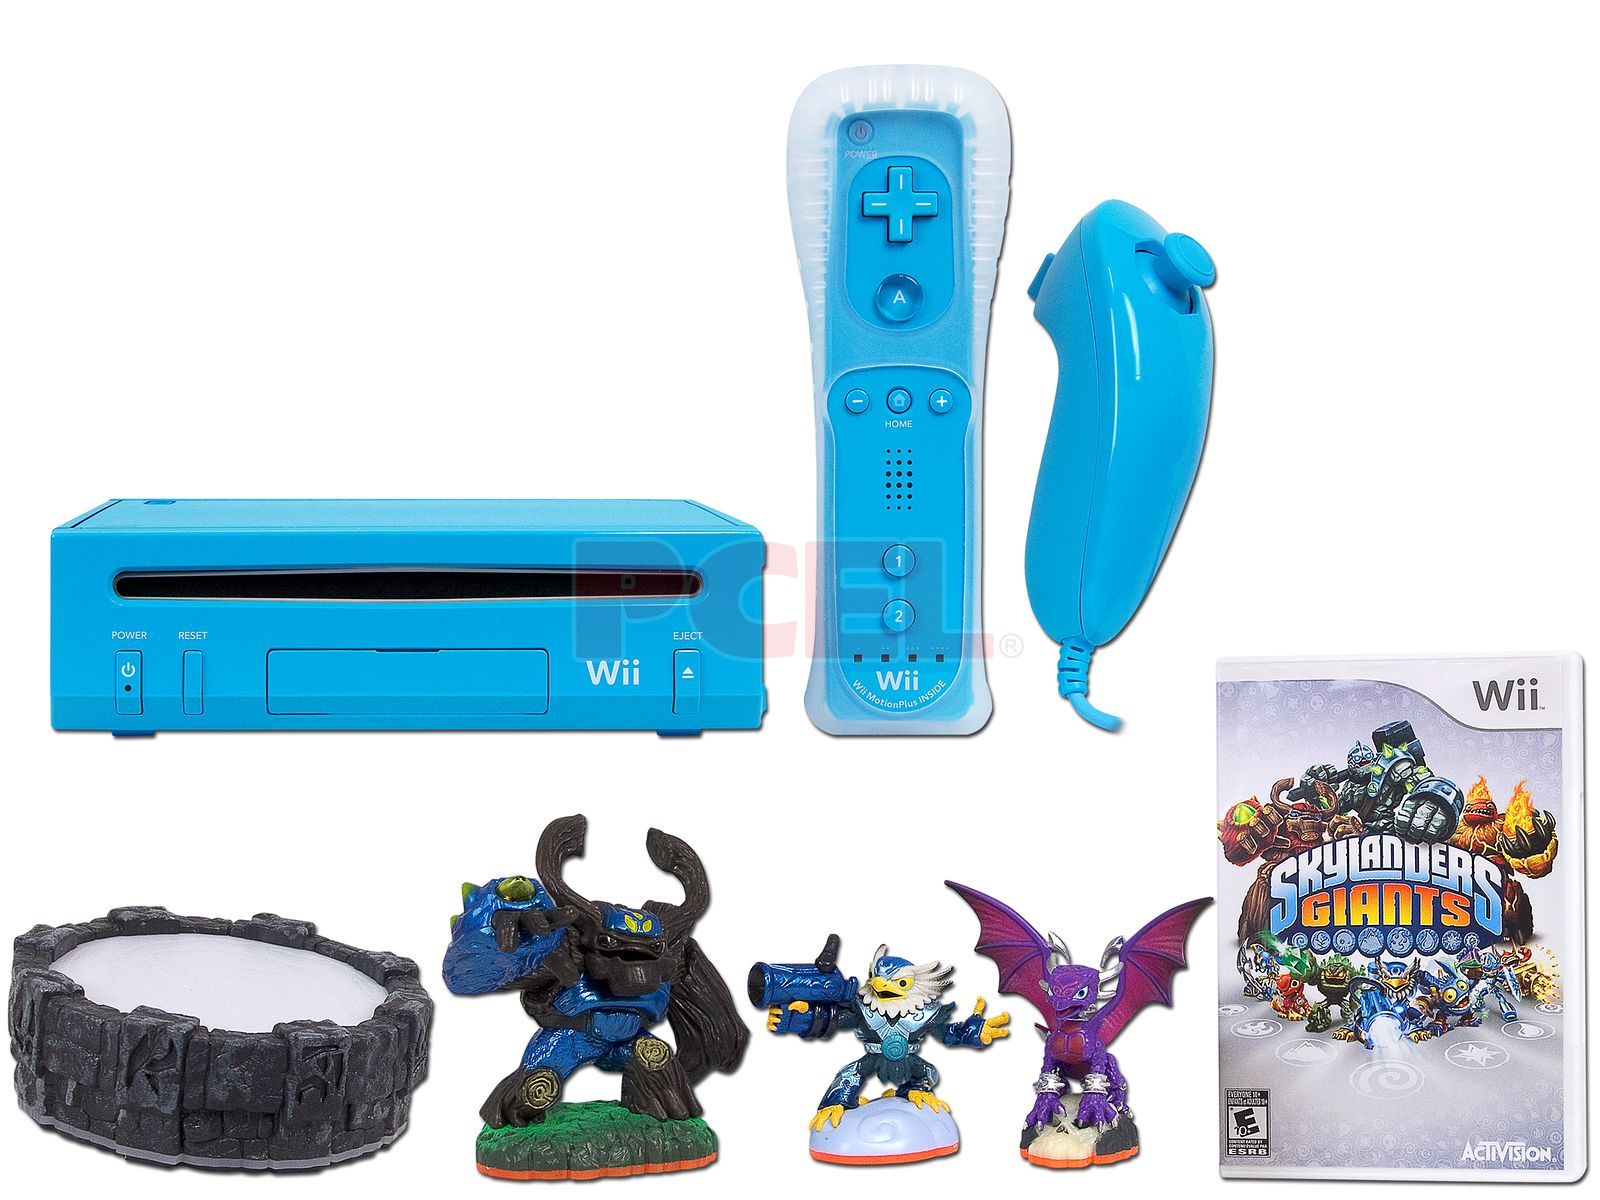 Consola Nintendo Wii Azul incluye starter pack de Skylanders Giants (con  tres figuras coleccionables y portal de poder).